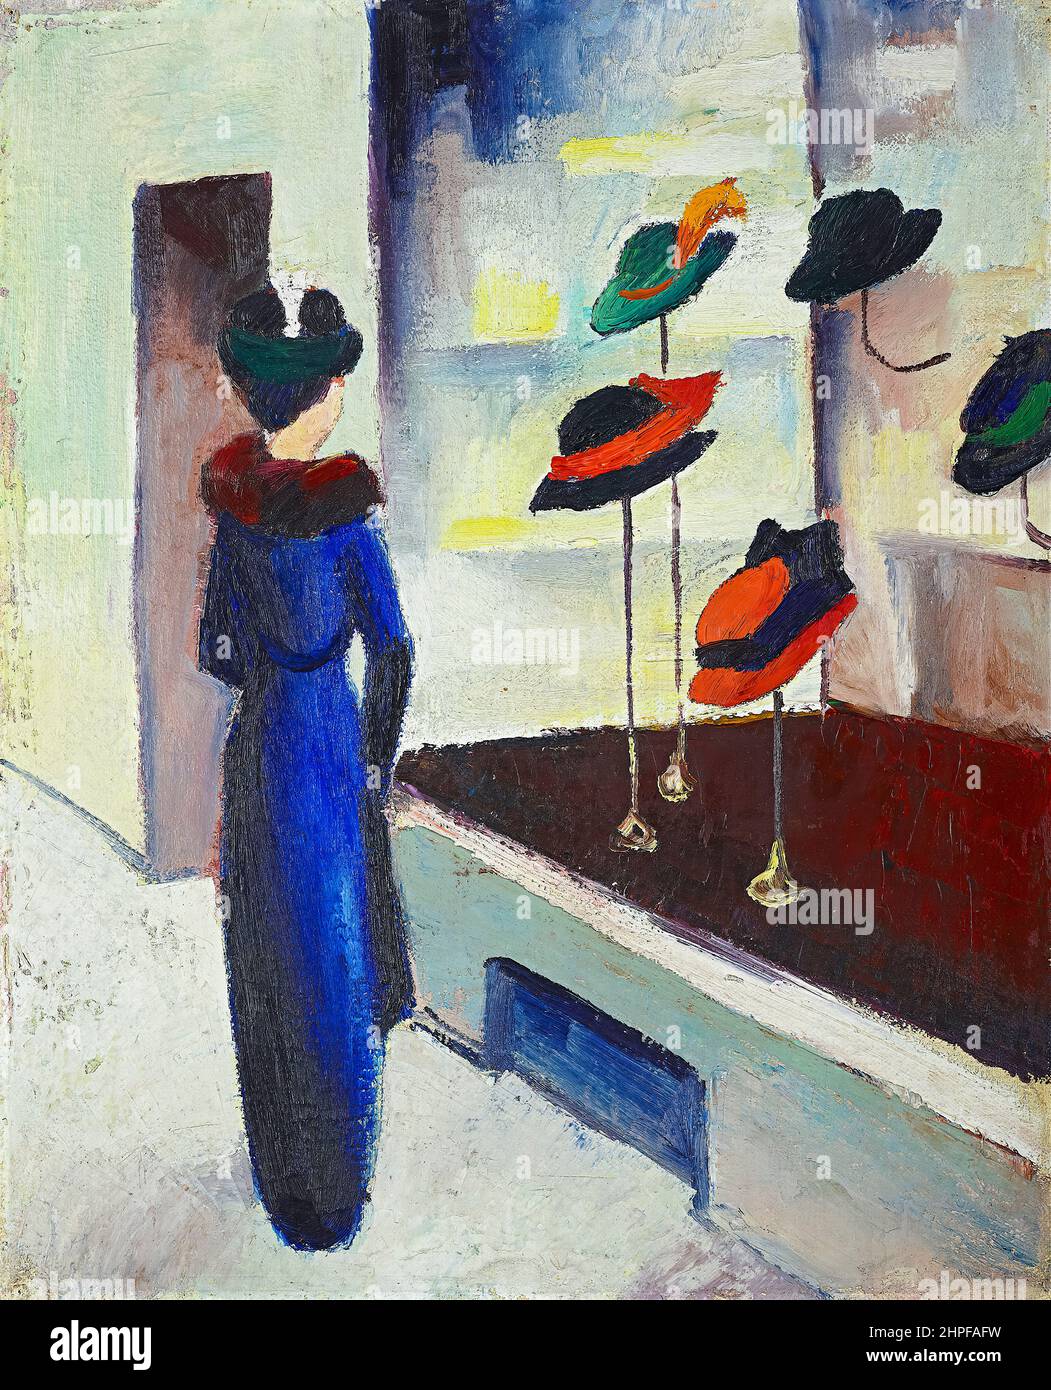 August Macke, Hutladen (Milliner's Shop), Gemälde, Öl auf Leinwand, 1913 Stockfoto